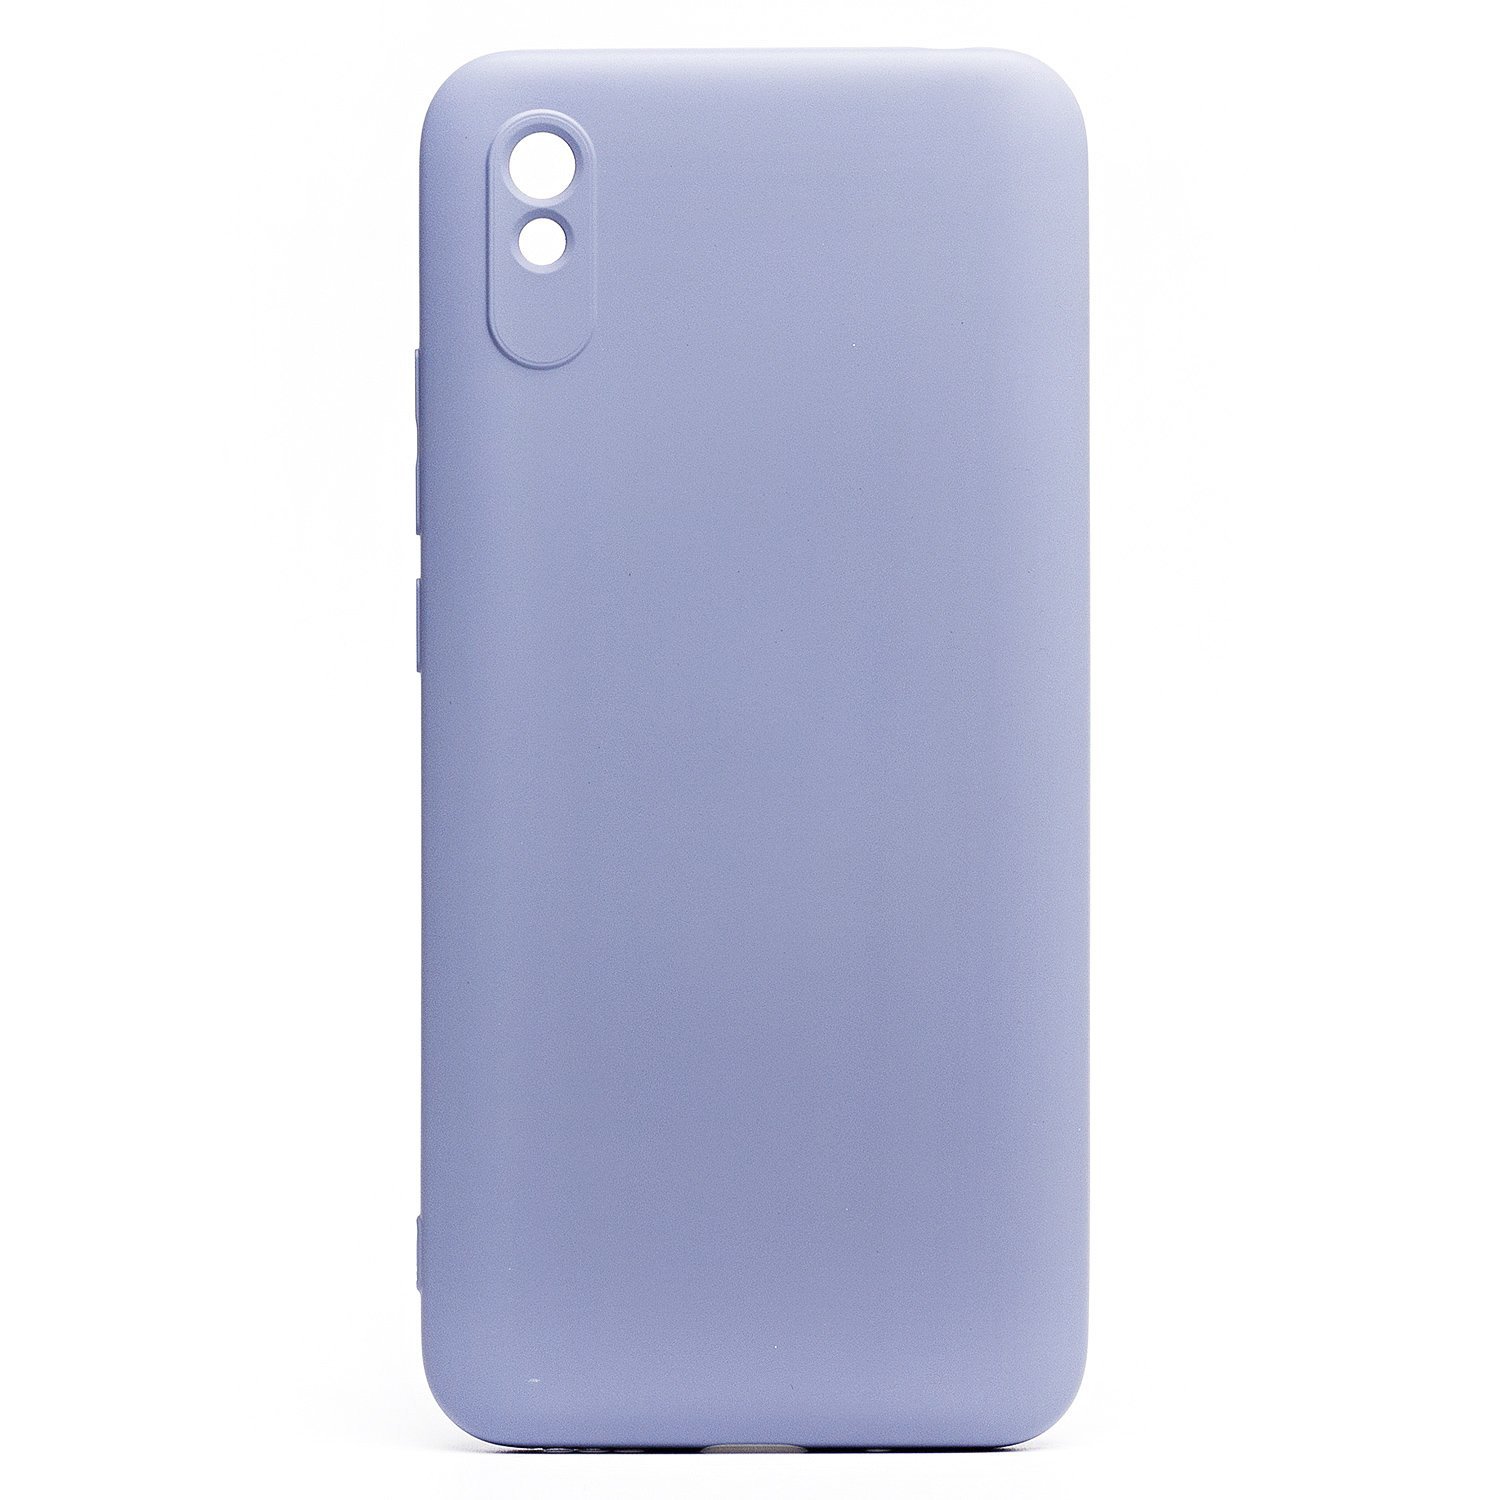 Чехол-накладка Activ Activ Full Original Design для смартфона Xiaomi Xiaomi Redmi 9A/Redmi 9i, силикон, gray (119467)